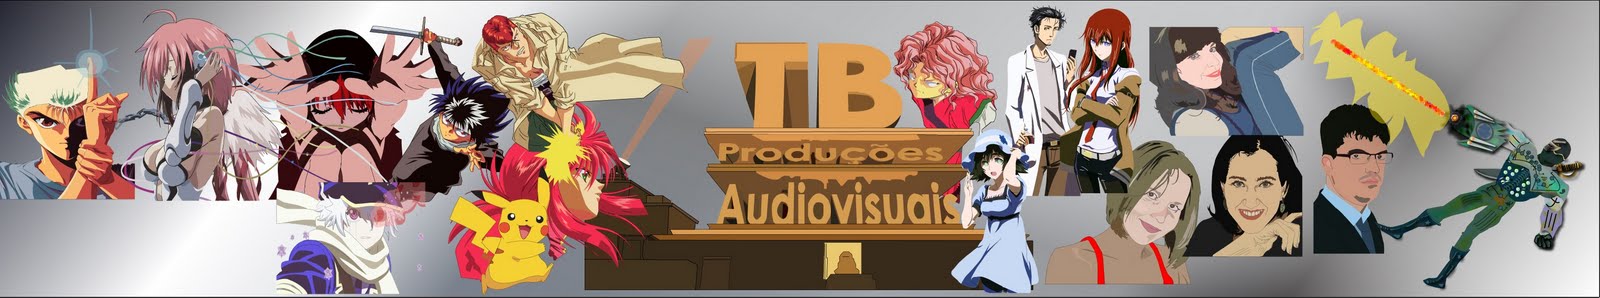 TB Produções Audiovisuais (Cinema, Quadrinhos e Cultura)